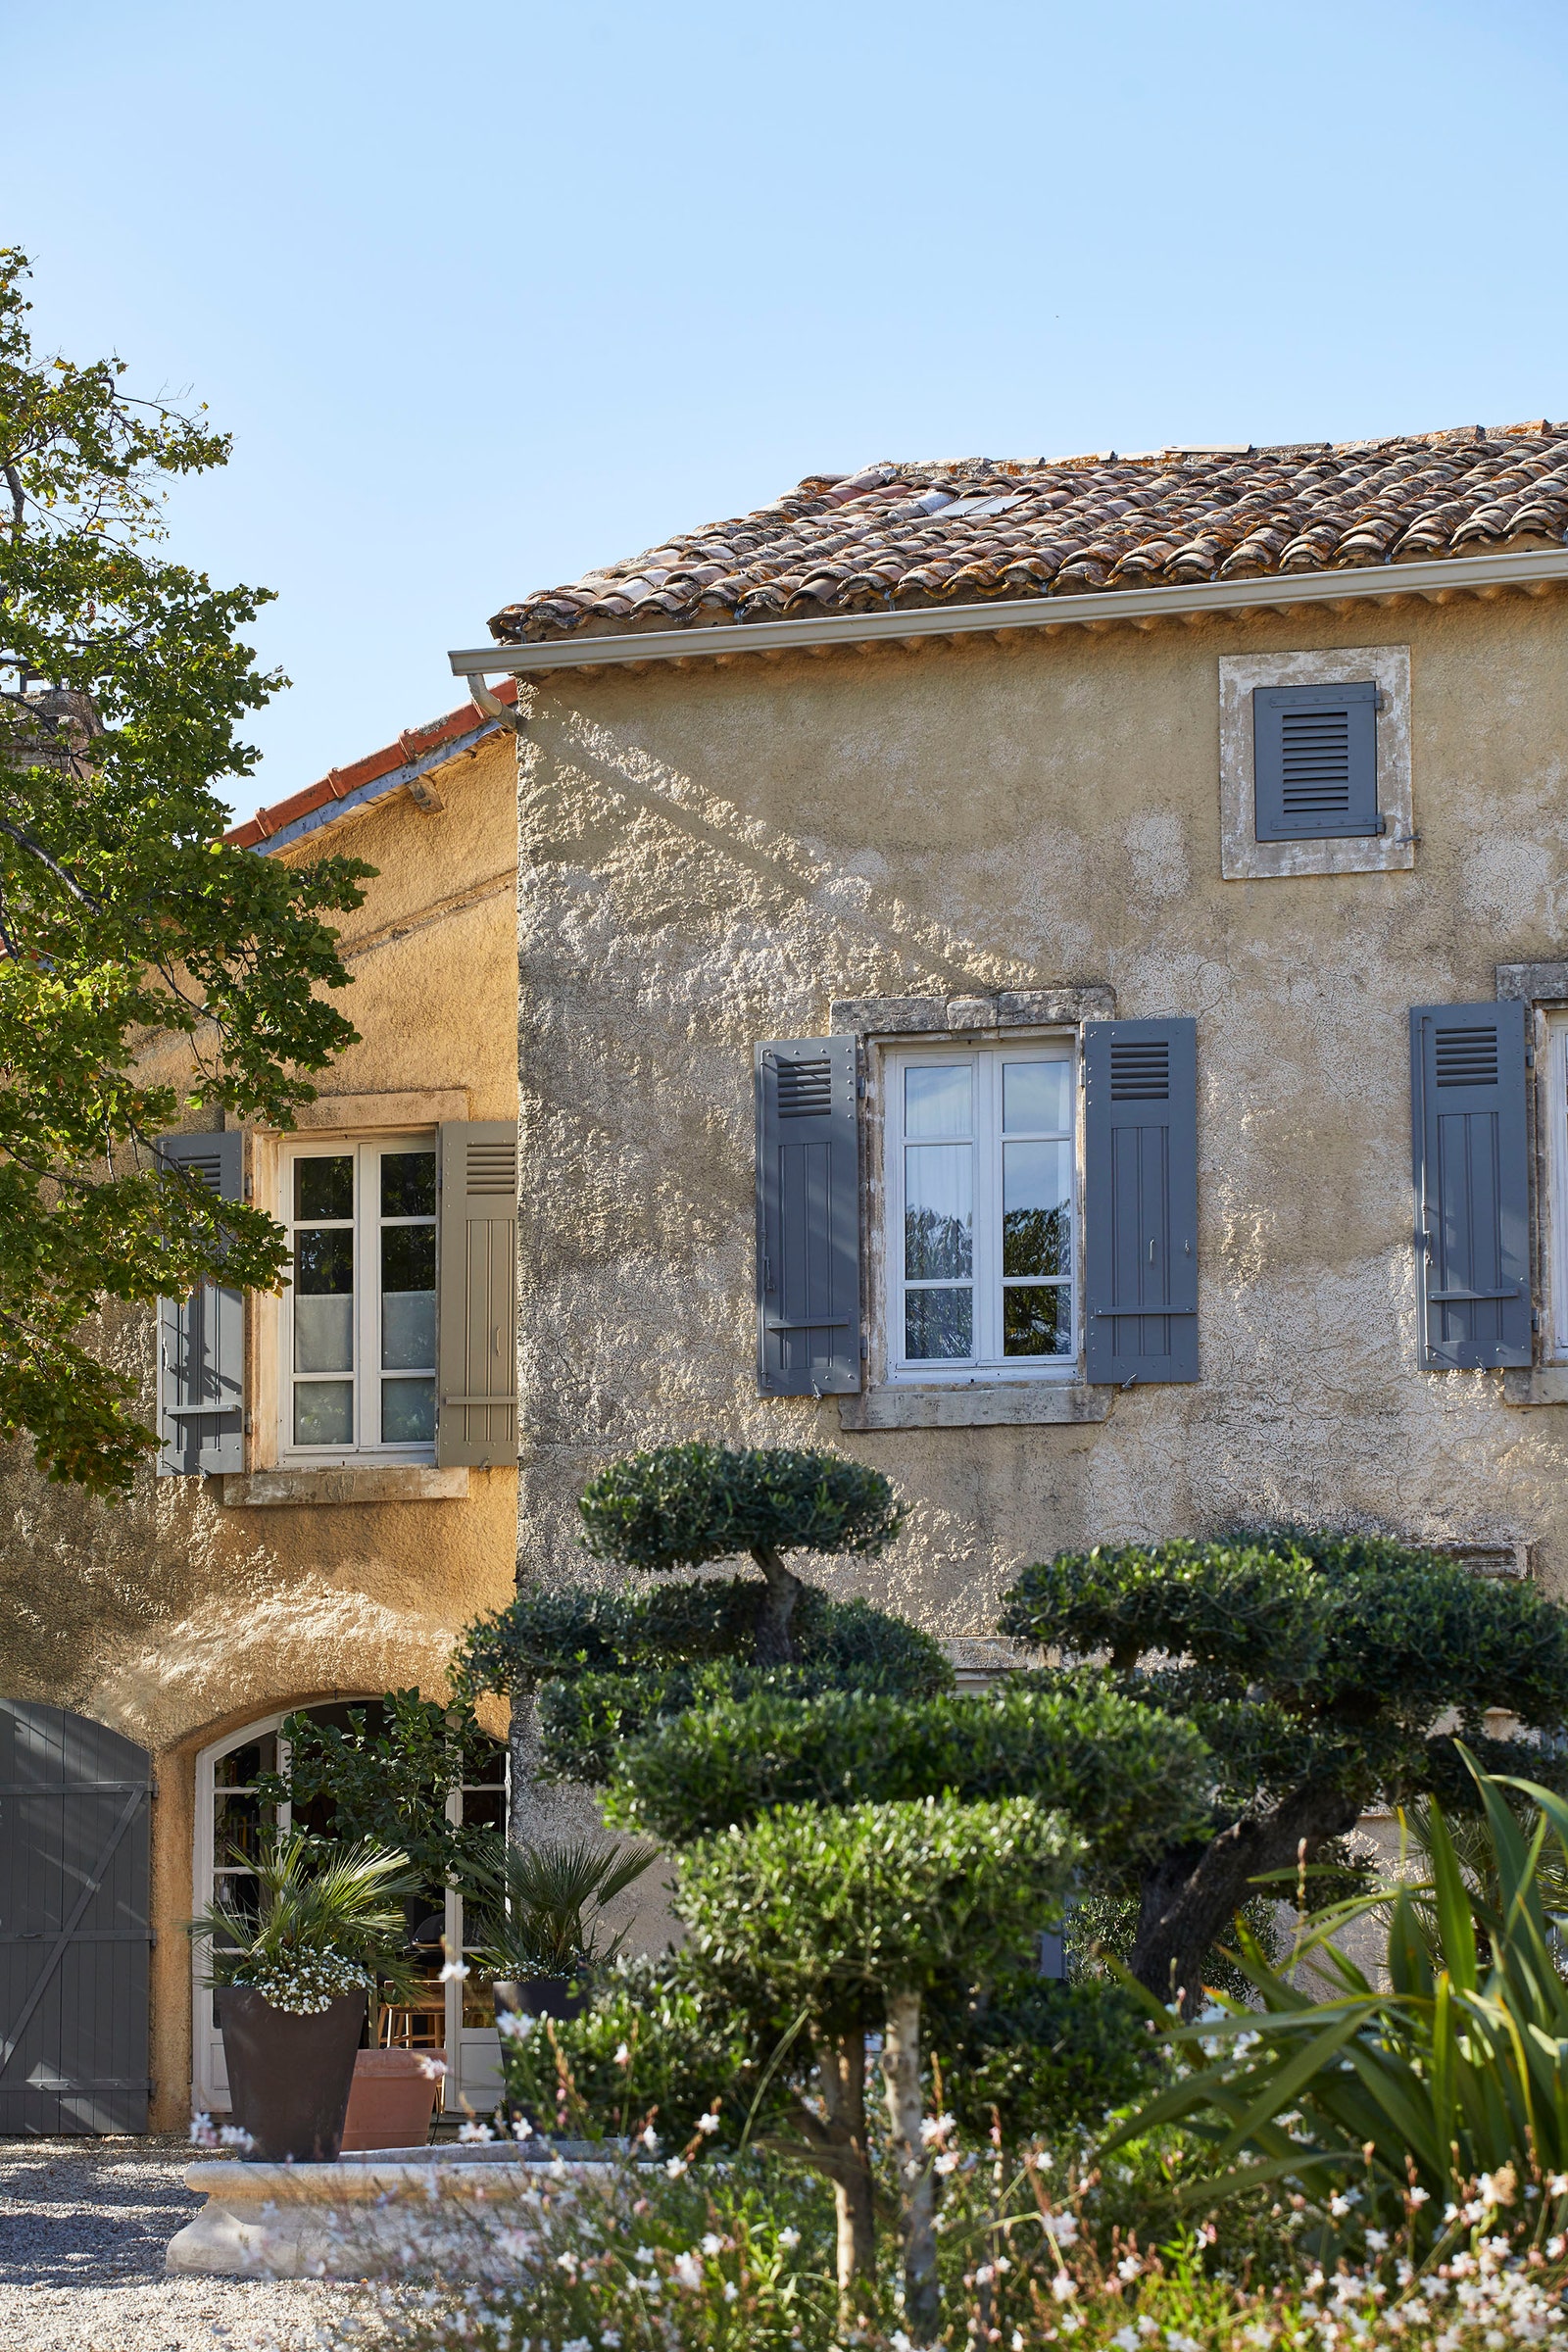 Снаружи здание выглядит как типичный дом на юге Франции.